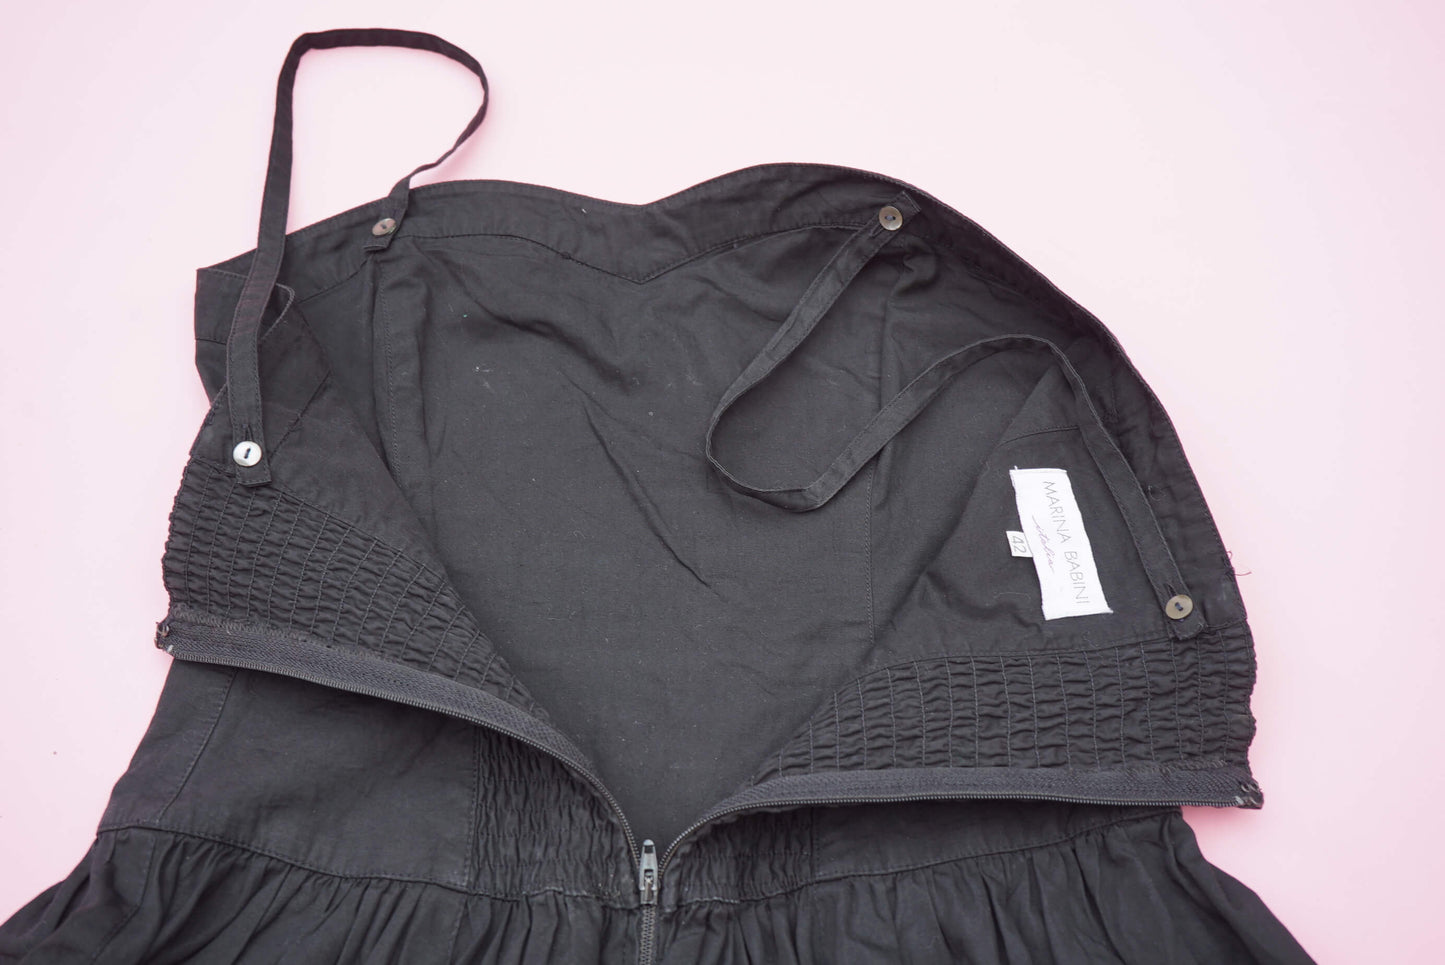 Vintage 90s Little Black Dress 100% Cotton Size S-M